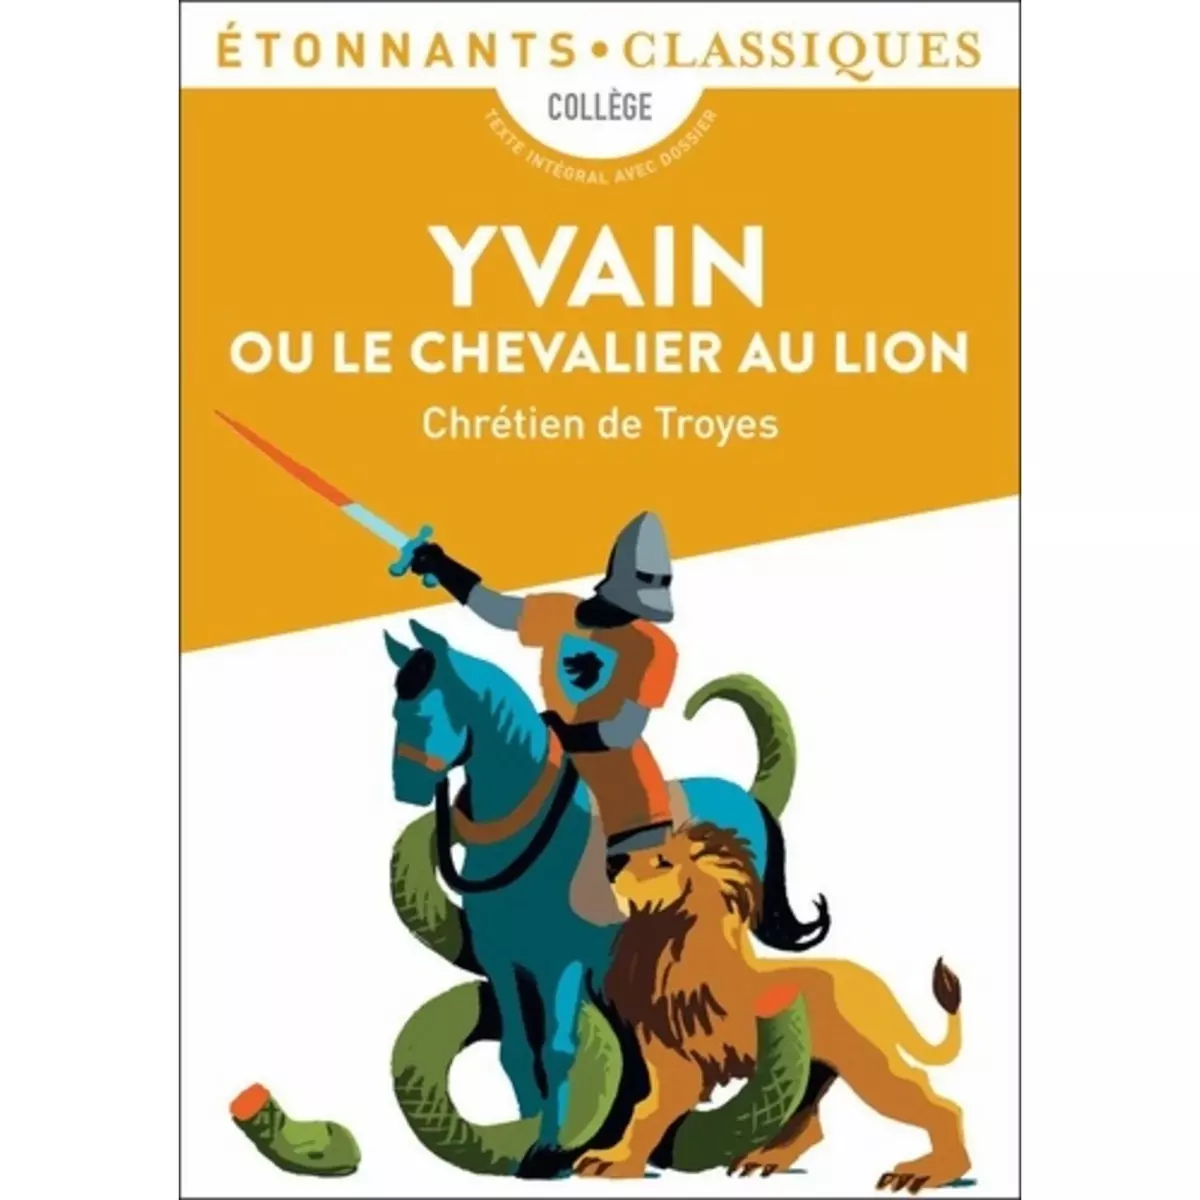  YVAIN OU LE CHEVALIER AU LION, De Troyes Chrétien